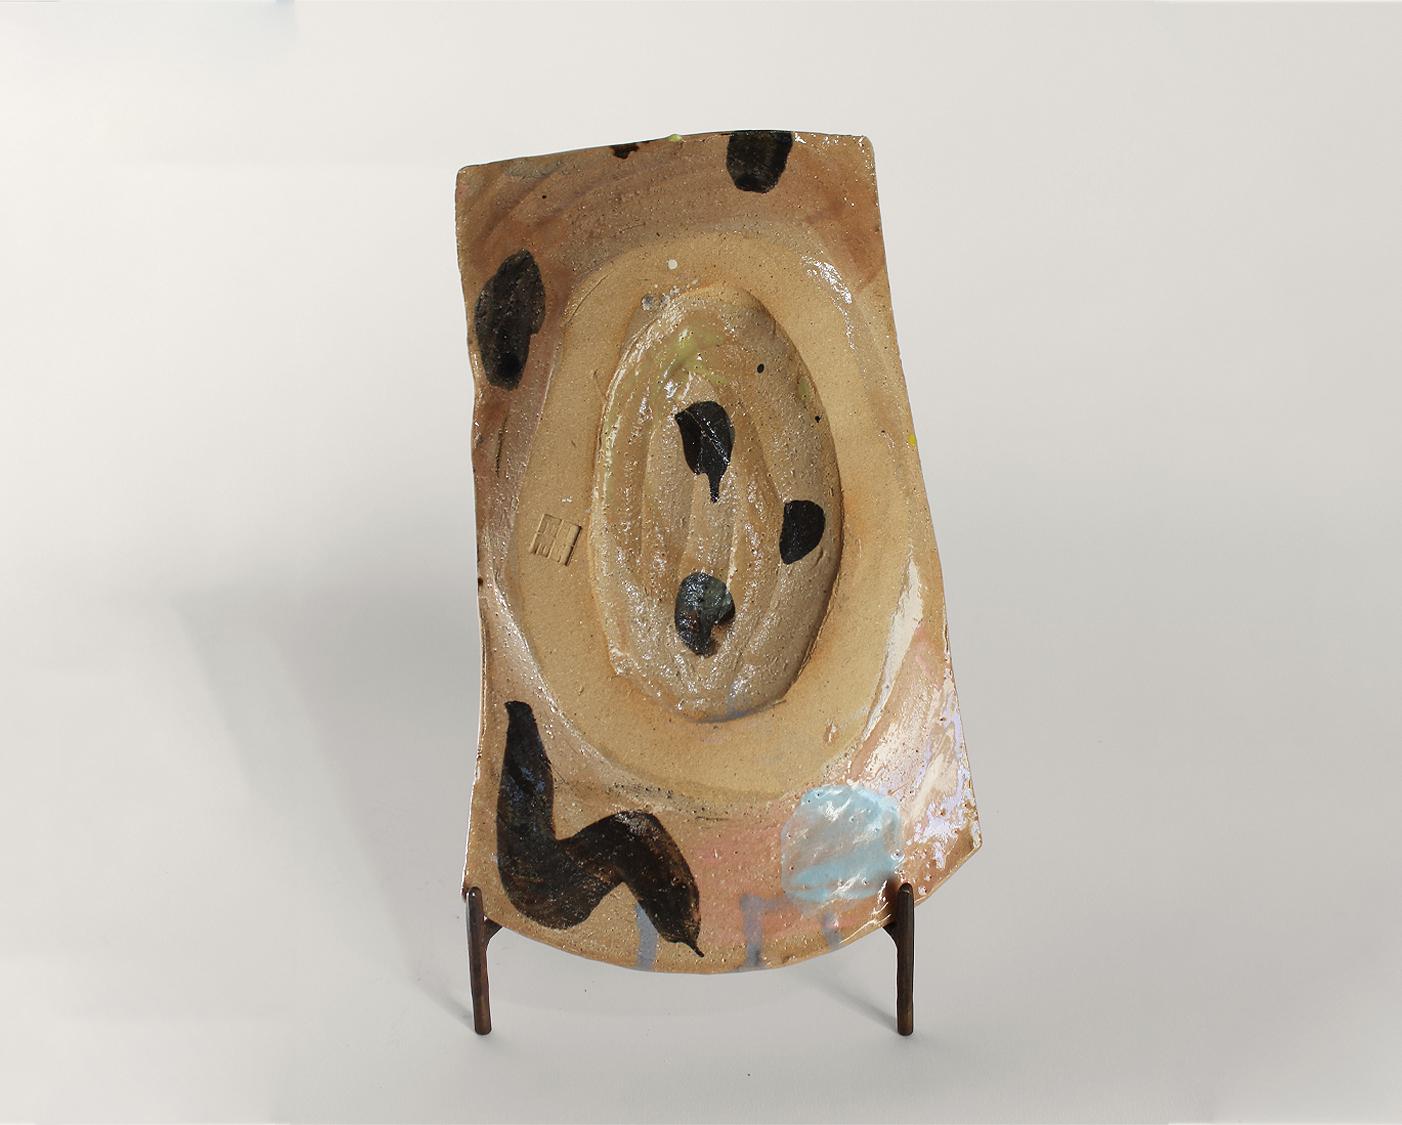 Terre sonore - Shun Kadohashi 

Bunter rechteckiger freier japanischer Teller 

29,5 x 15 x 12 cm
Sandstein
Hergestellt in Japan
Einzigartiges Stück
2023

Dieses Werk wird mit einem Echtheitszertifikat geliefert.

Shun Kadohashi ist ein japanischer